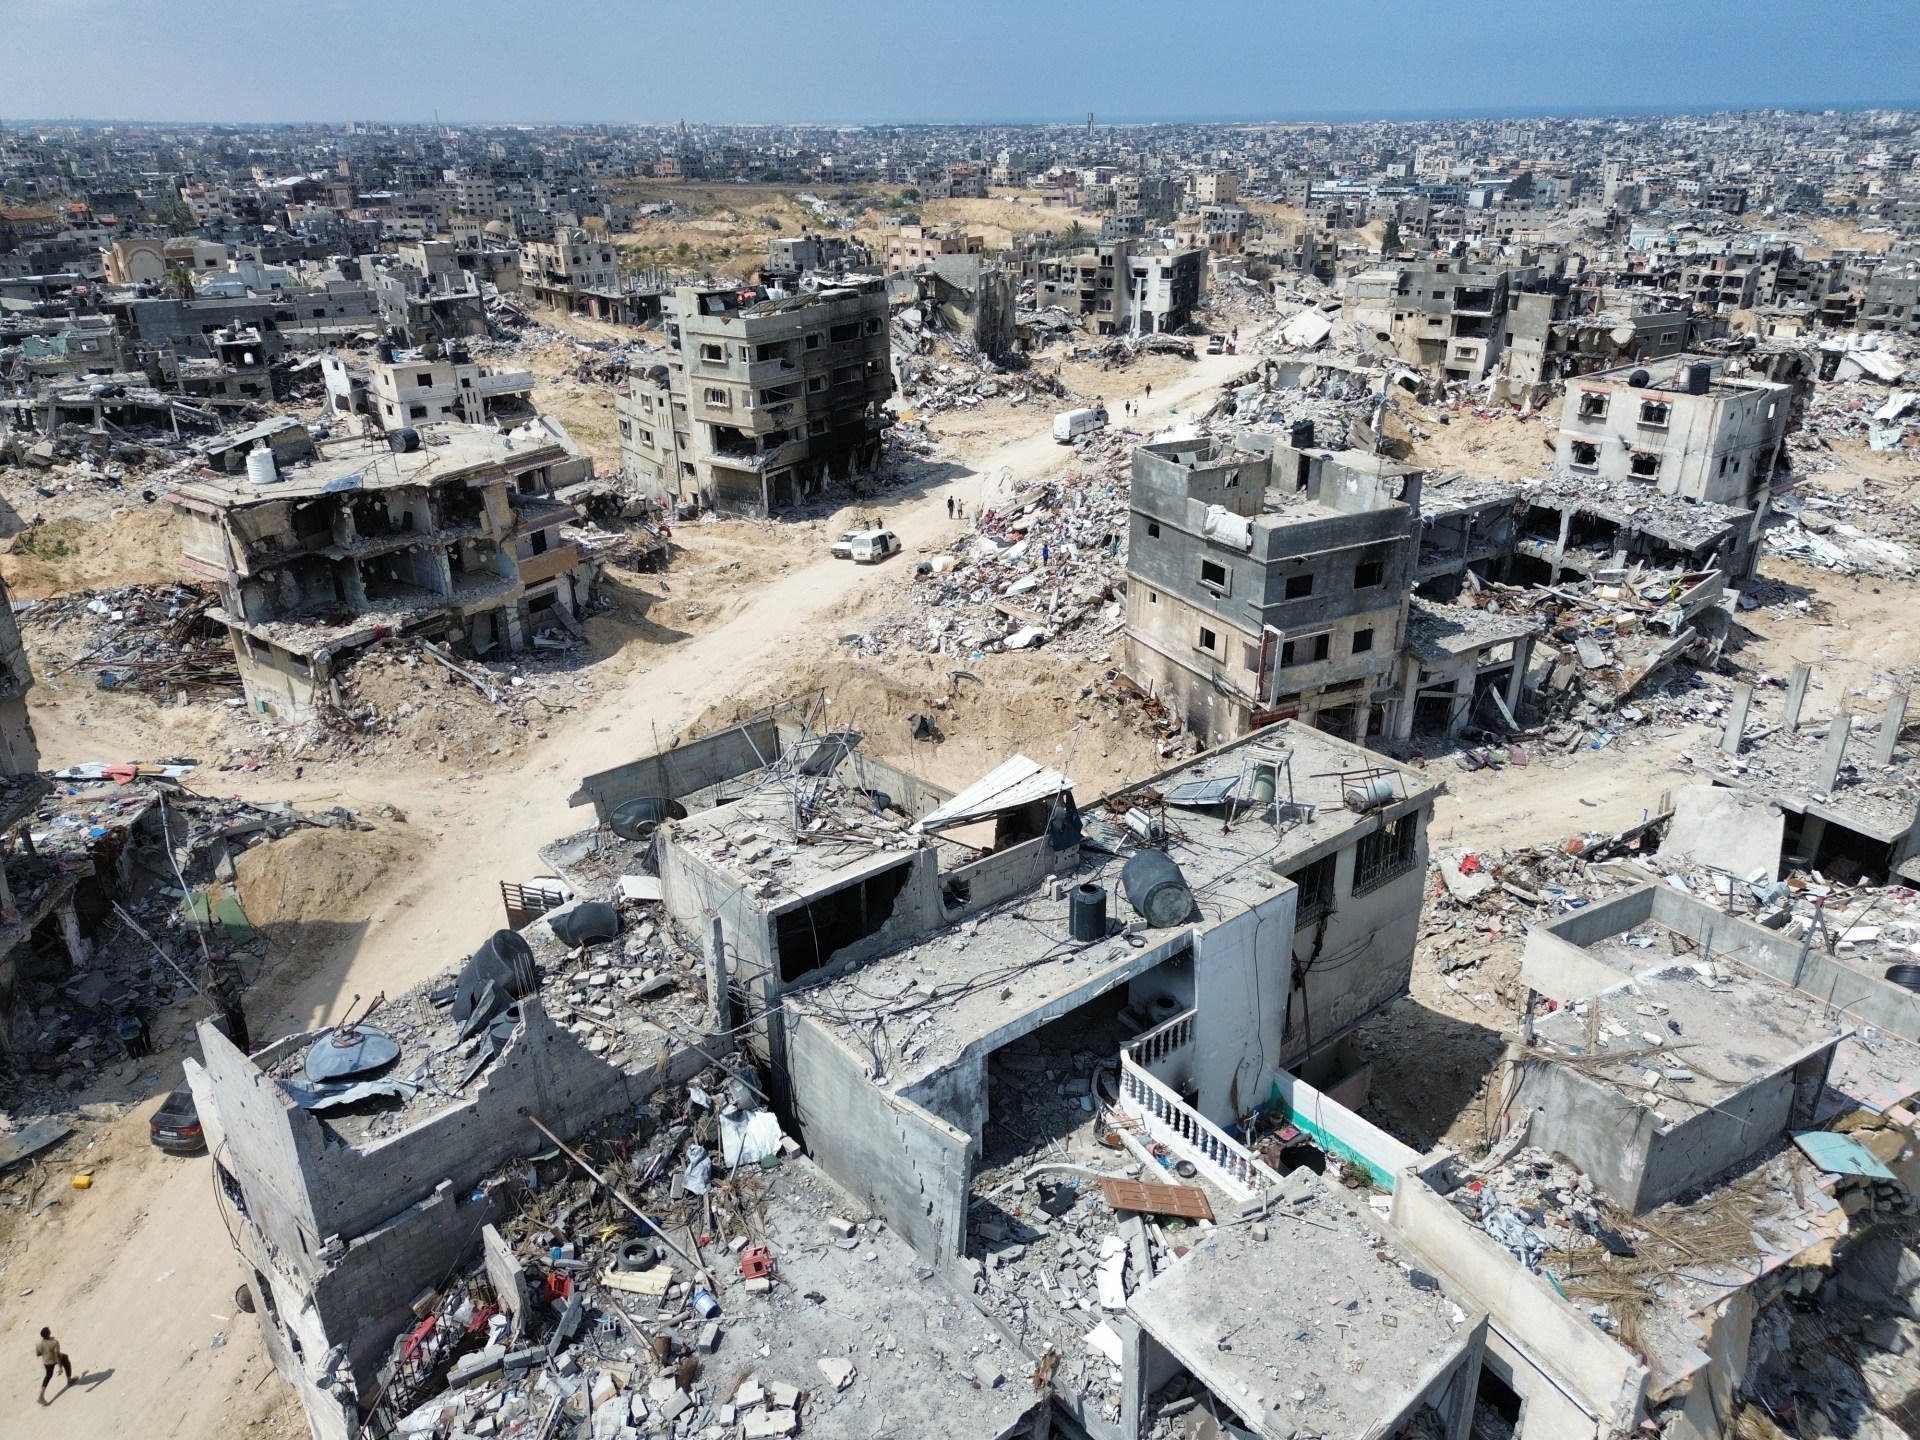 دمار غزة يفوق الدمار الذي ألحقه الحلفاء بدرسدن الألمانية في الحرب العالمية الثانية